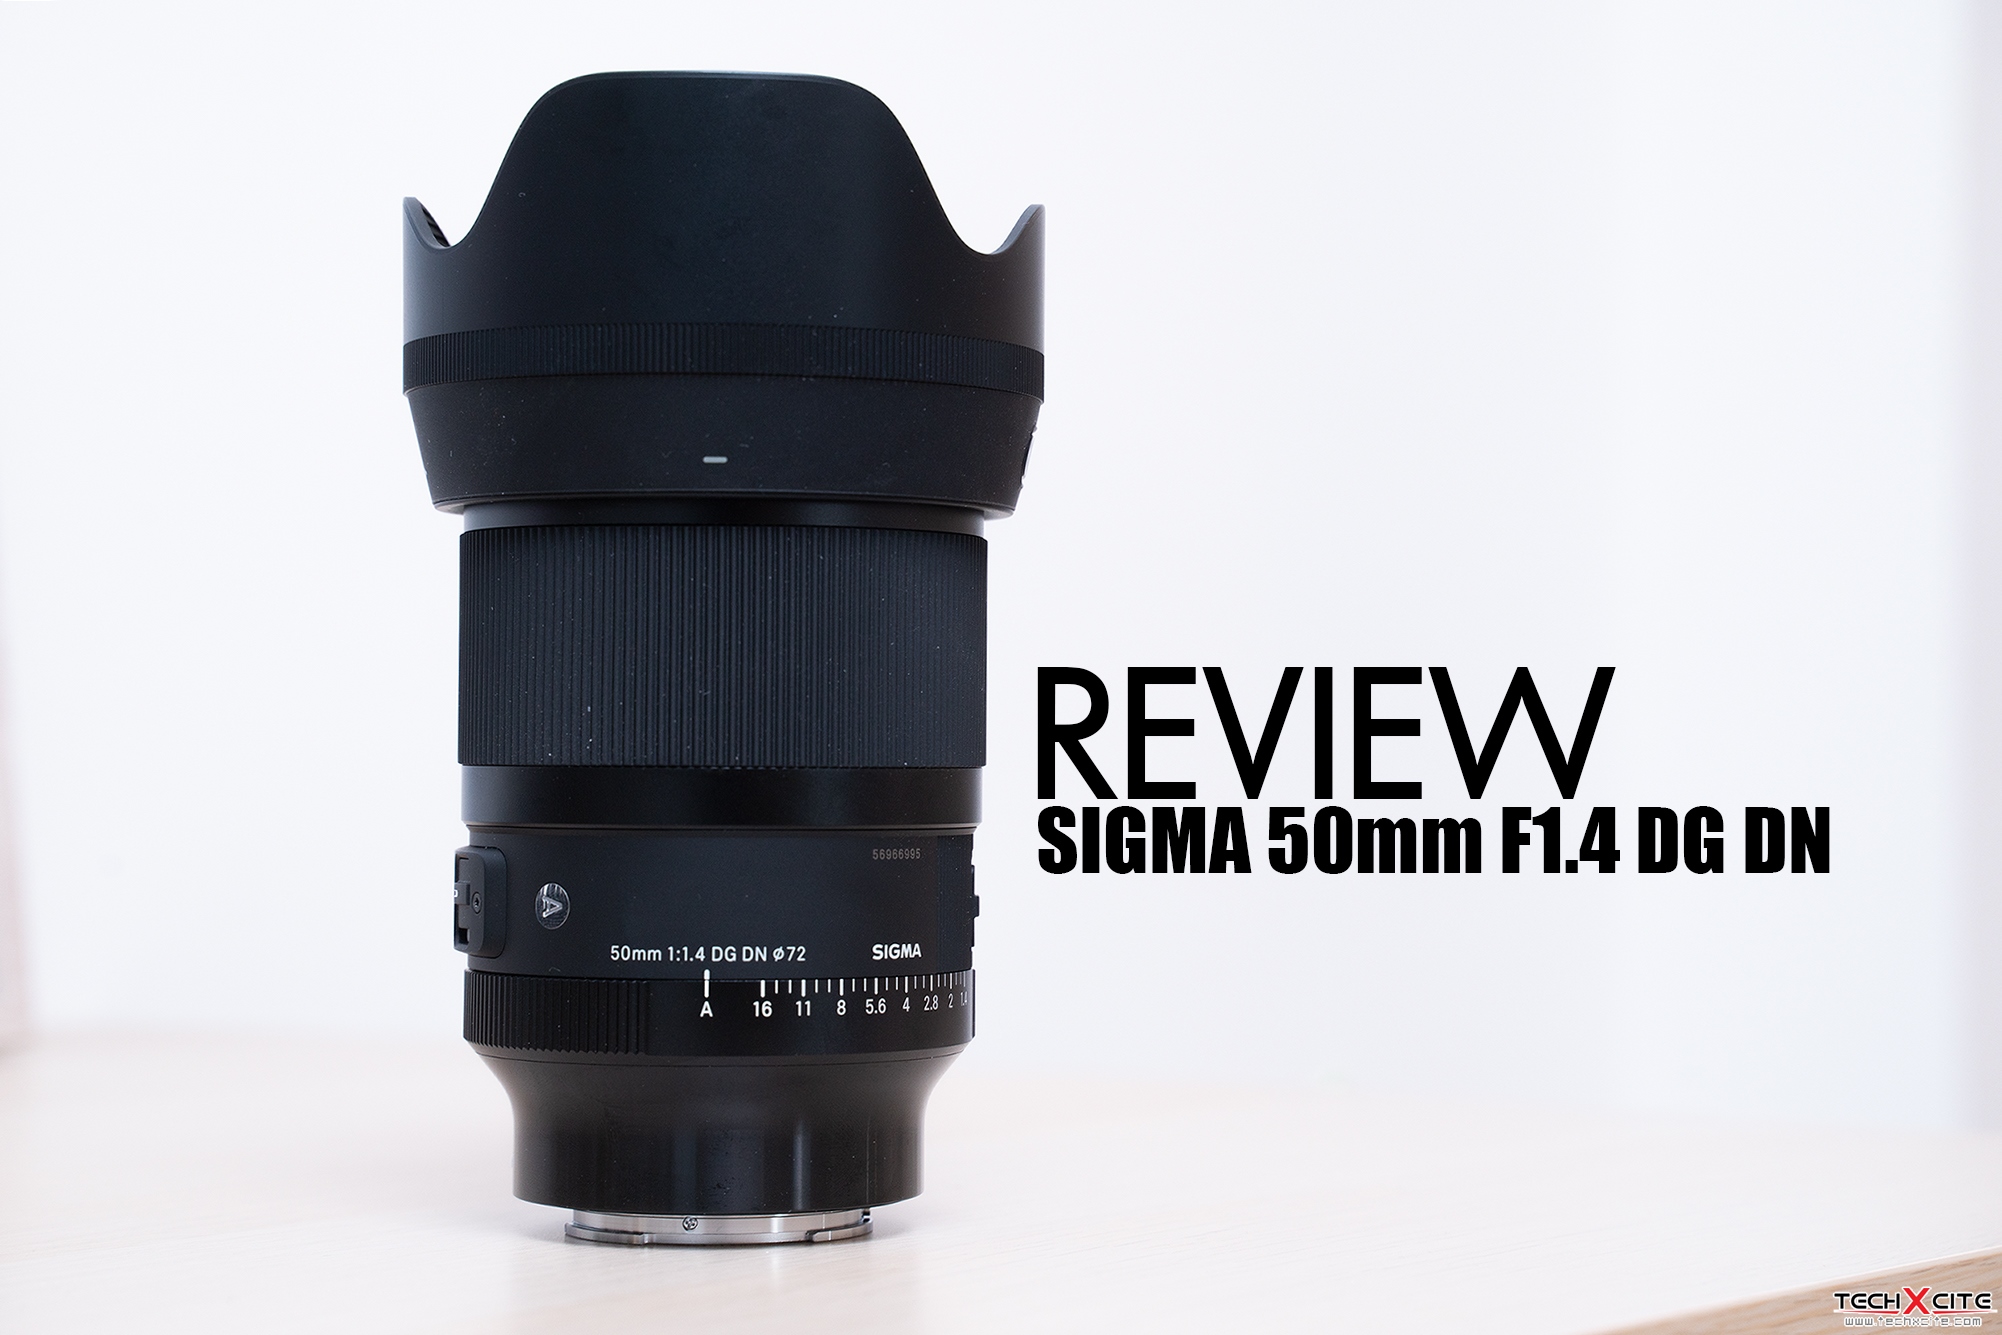 Review : เลนส์ SIGMA 50mm F1.4 DG DN อีกหนึ่งเลนส์ใหม่คู่กายสาย Portrait สำหรับชาว Sony และเมาท์ L